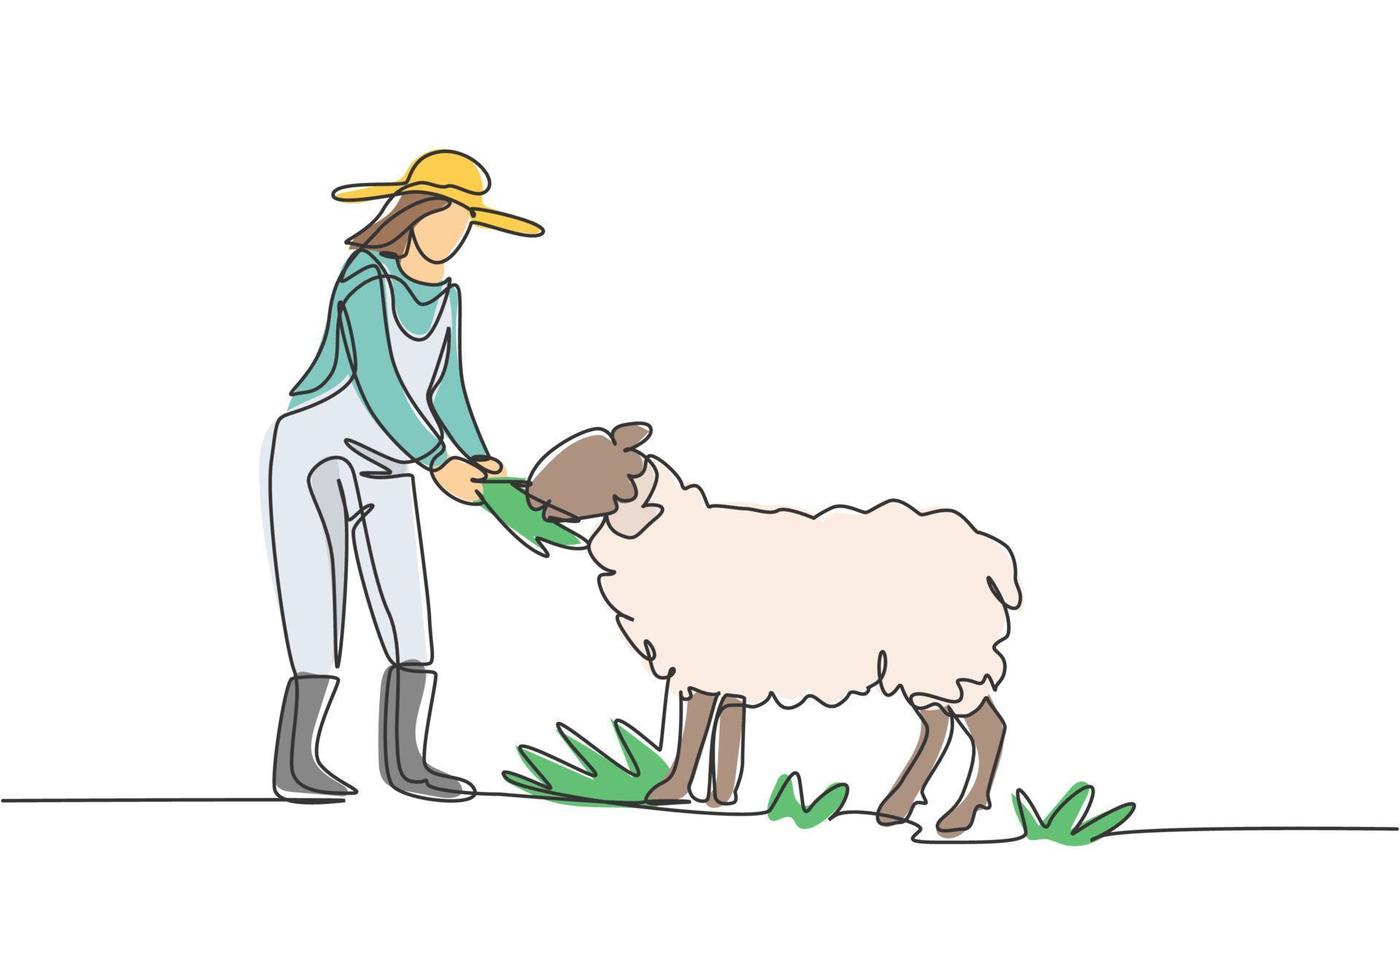 desenho de linha contínua única jovem agricultora está alimentando as ovelhas para que elas sejam saudáveis e produzam a melhor carne. conceito de minimalismo. uma linha desenhar ilustração em vetor design gráfico.